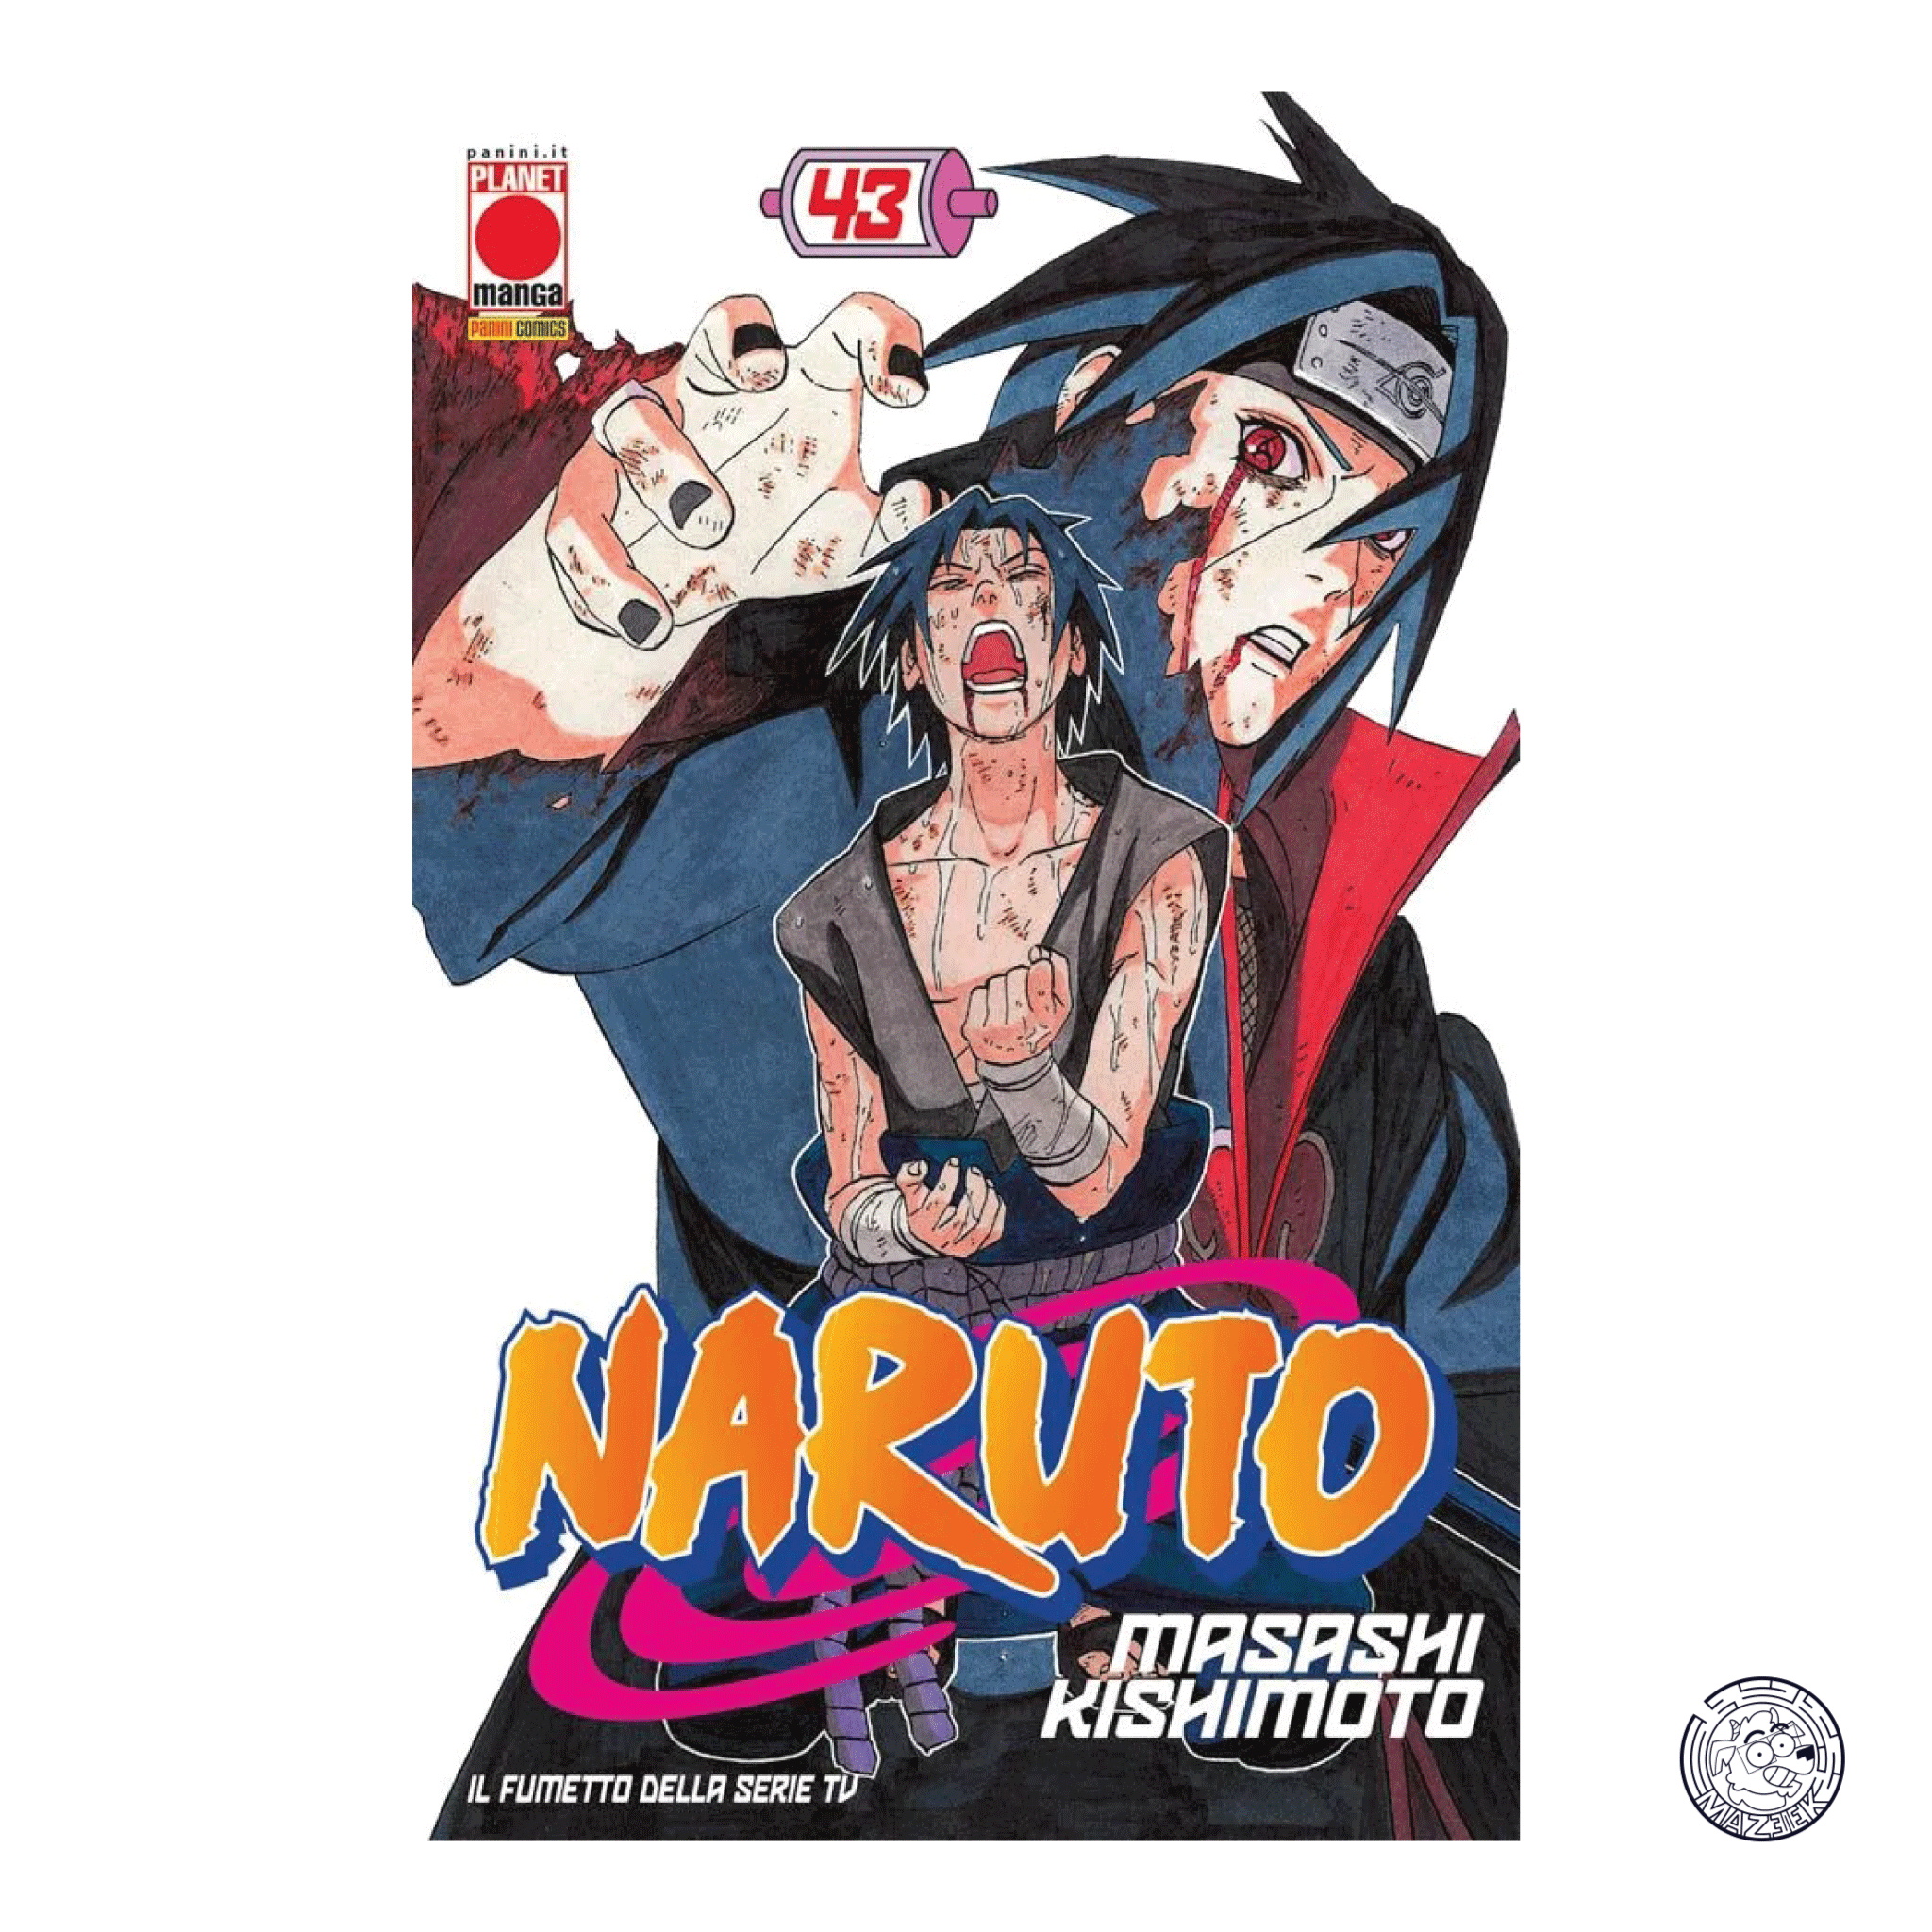 Naruto The Myth 43 – Reprint 4